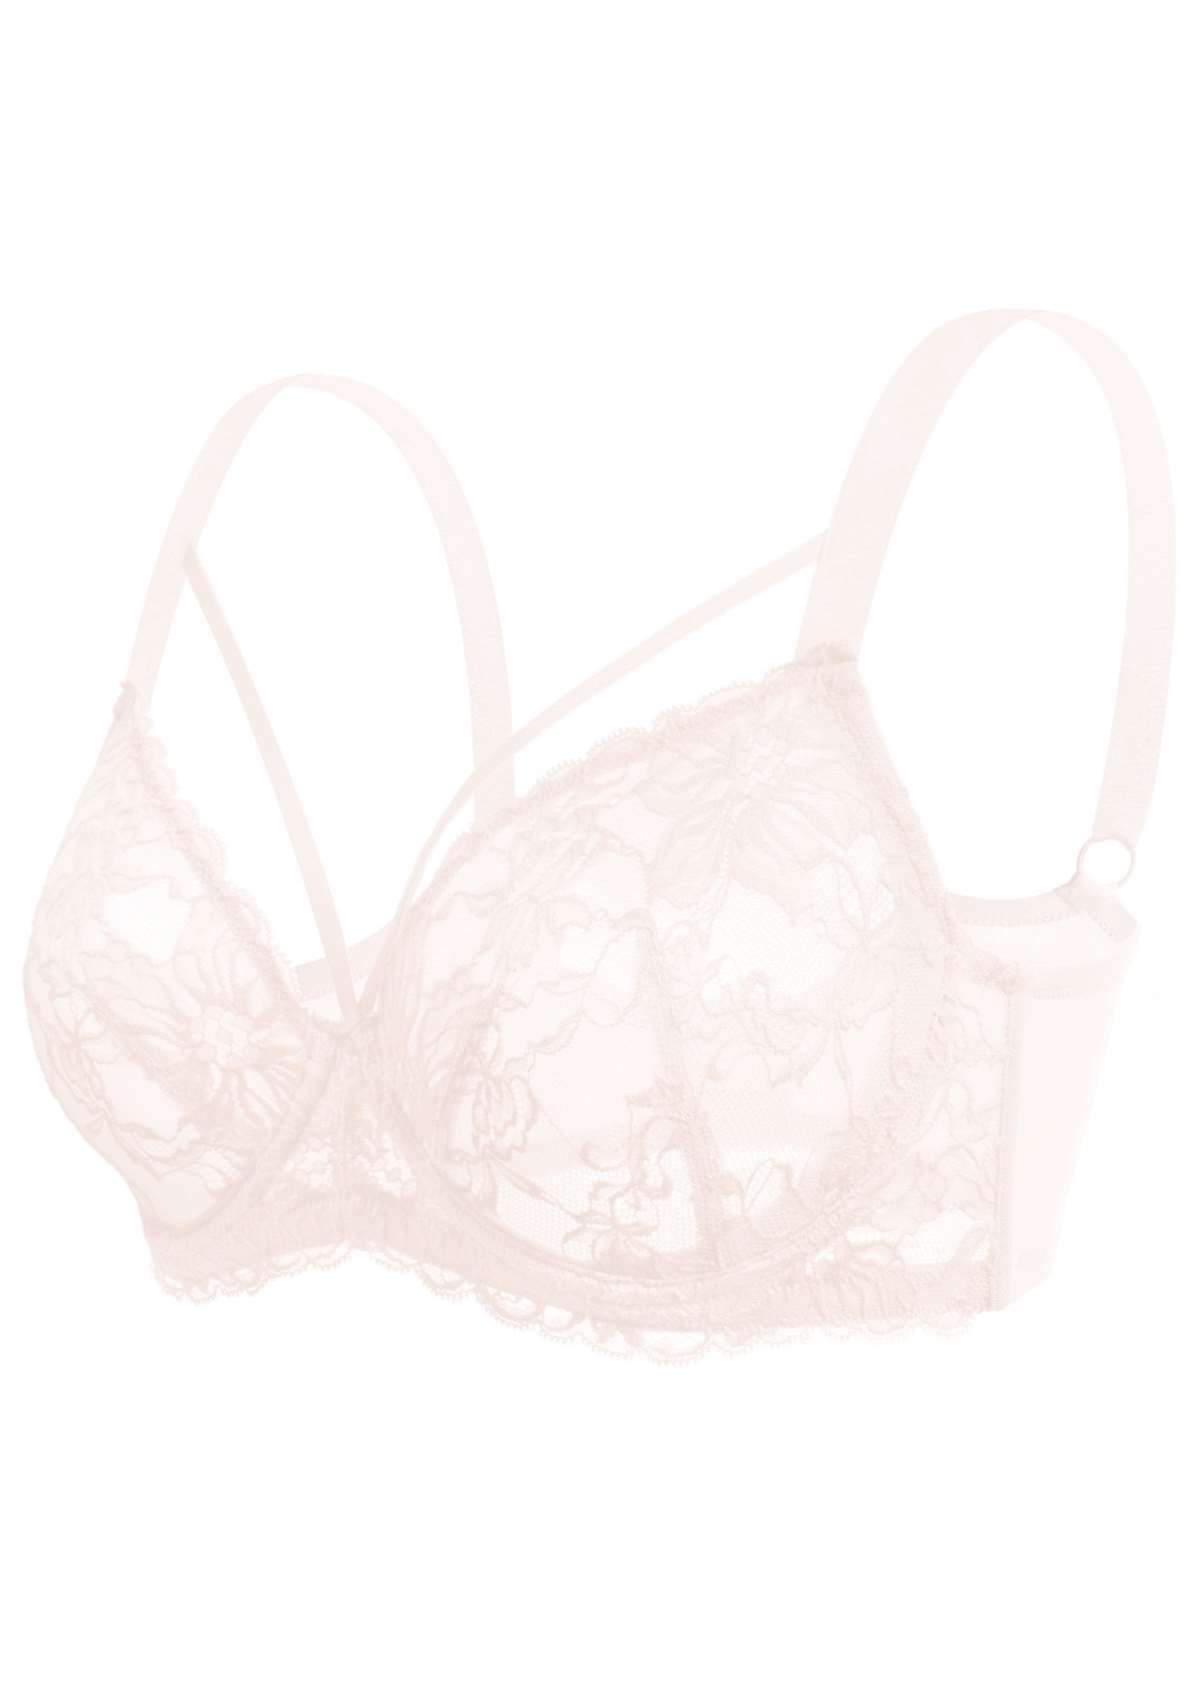 HSIA Pretty In Petals Underwire Lace Bra: No Padding, Full Cup Bra - Dusty Peach / 36 / C